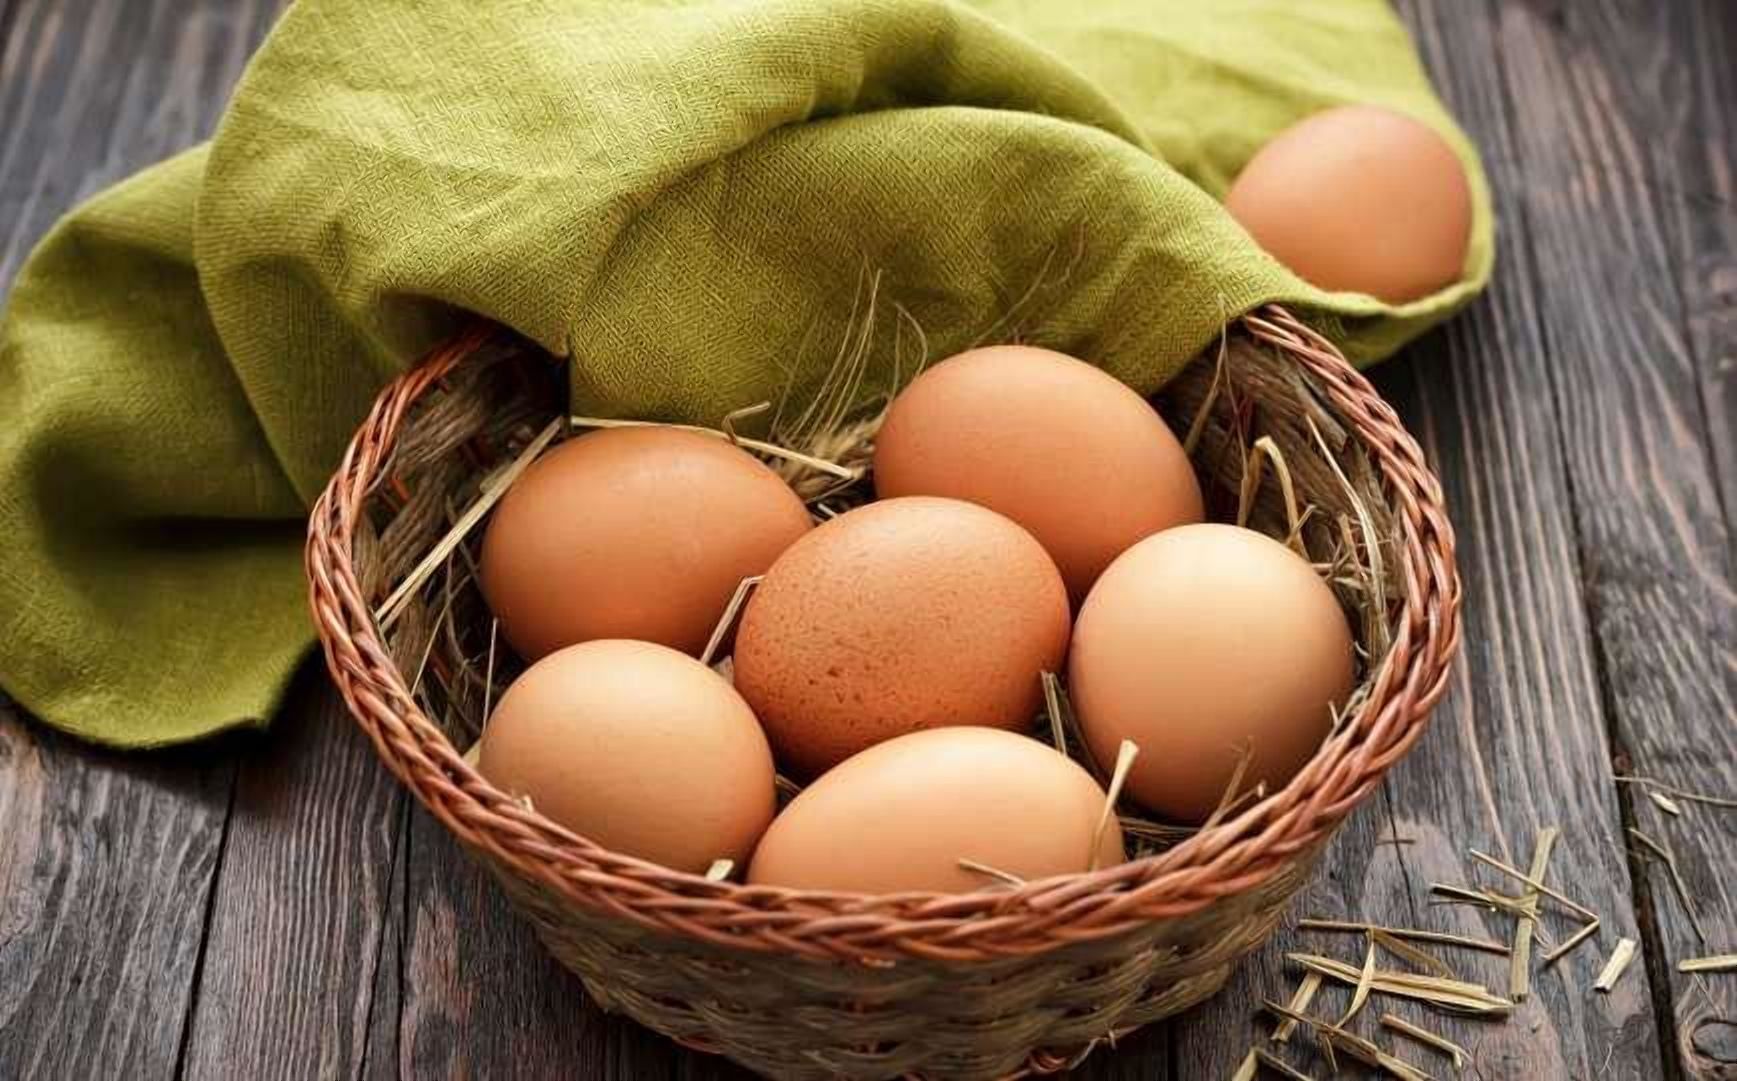 40 гривень за десяток: яйця скоро шокуватимуть ціною - Агро